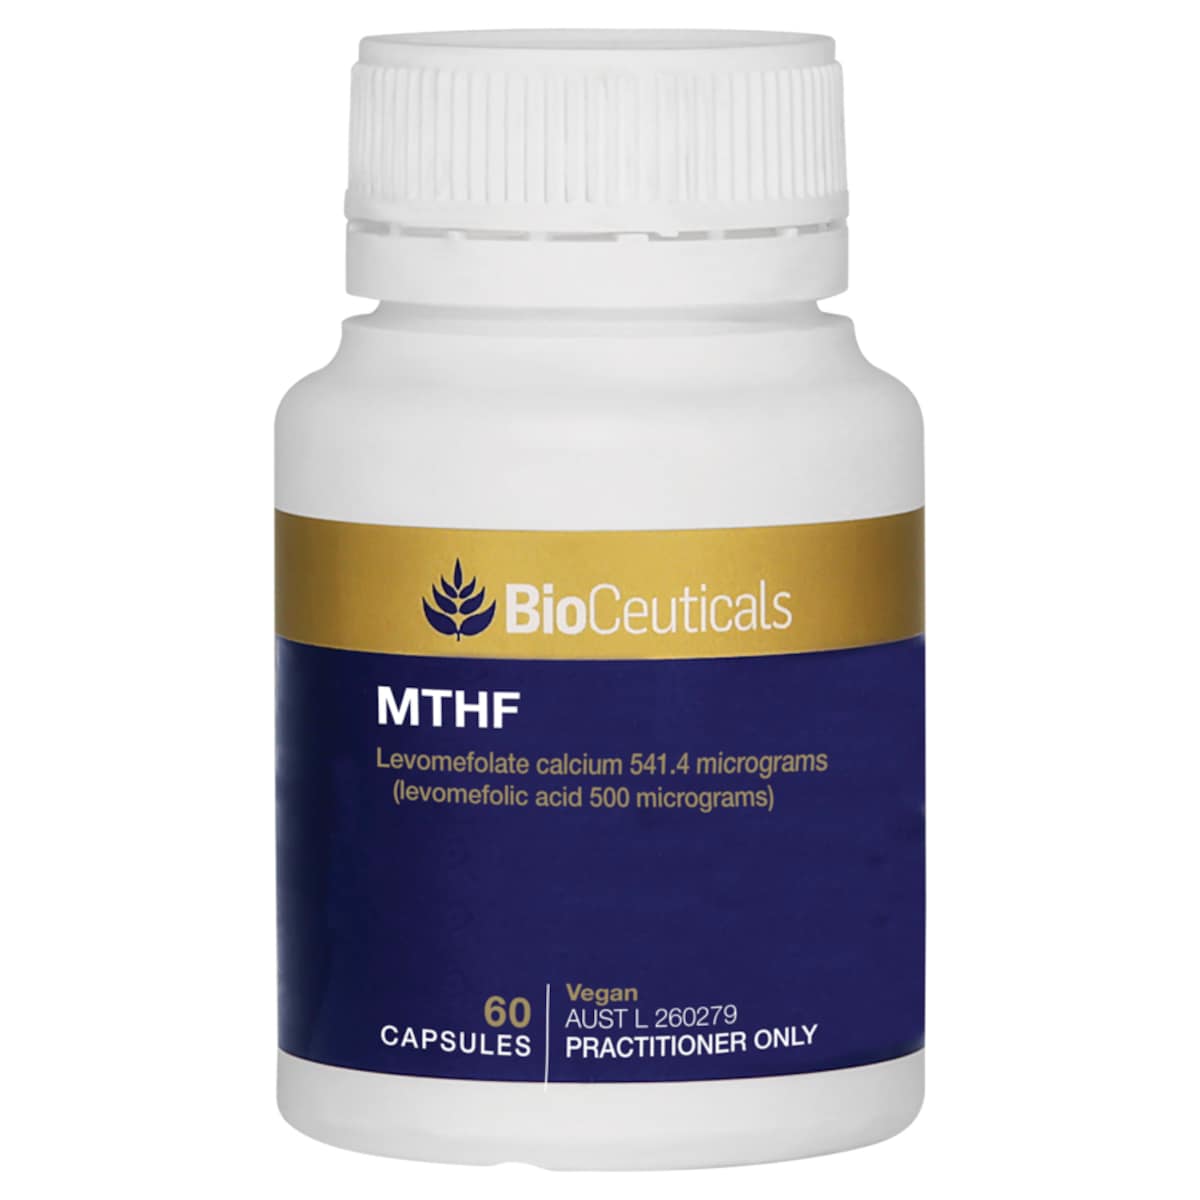 BioCeuticals MTHF 60 Capsules Australia